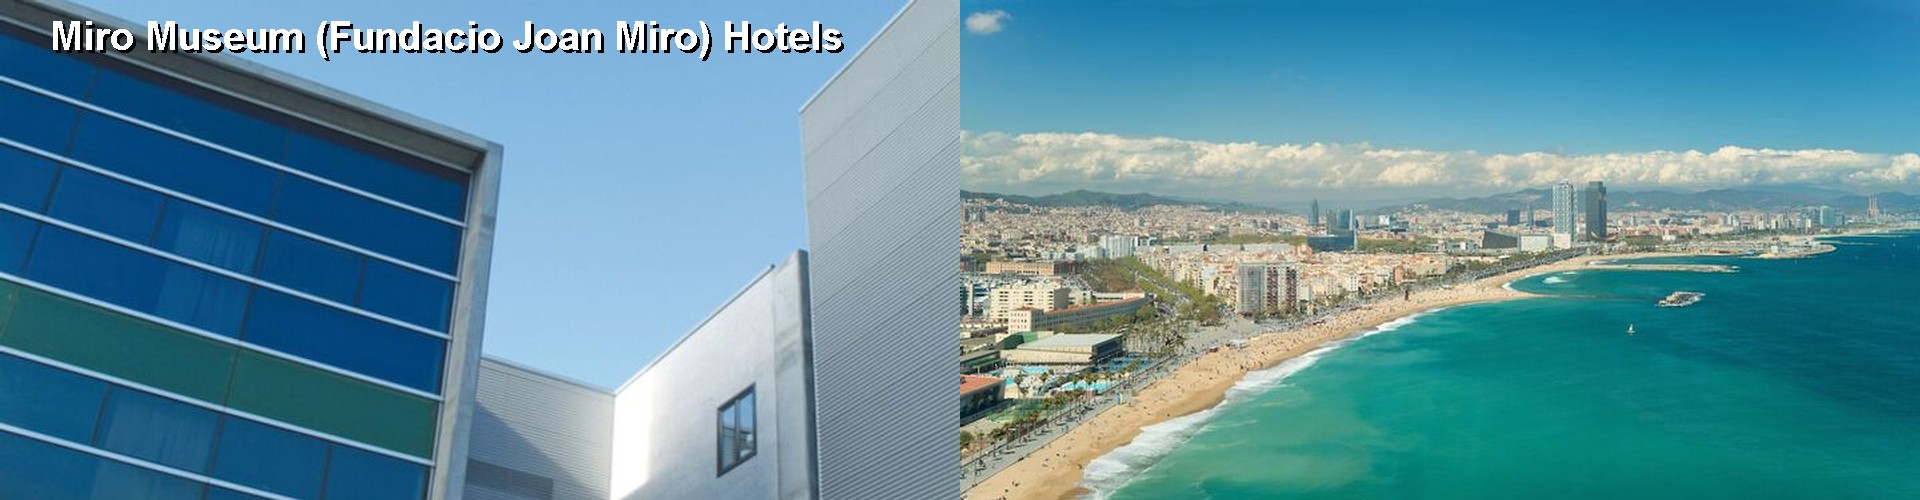 5 Best Hotels near Miro Museum (Fundacio Joan Miro)